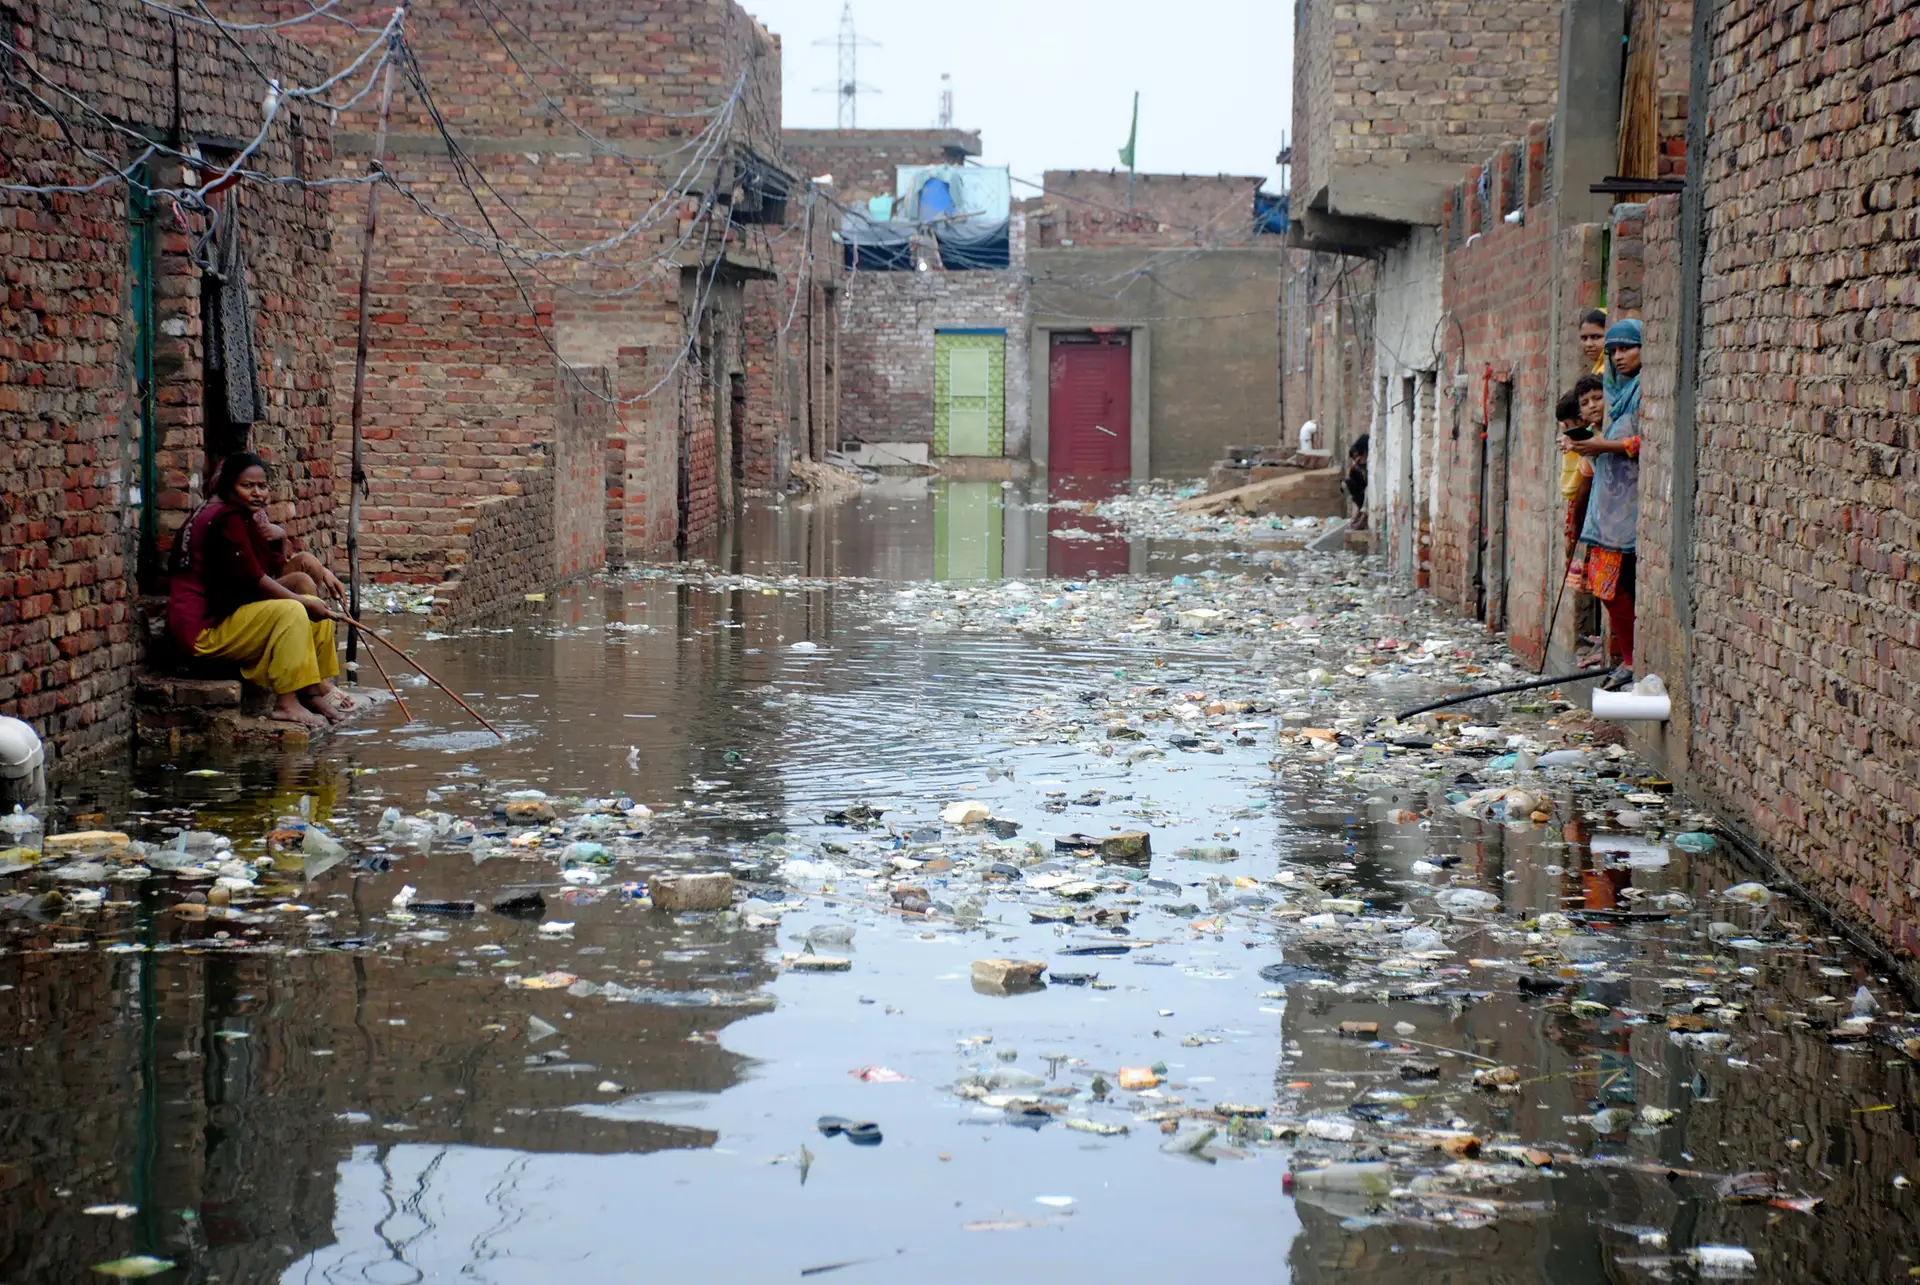 Lixo e doenças espalham-se nas águas estagnadas da chuva. A ONU estima que 6,4 milhões de paquistaneses precisam urgentemente de ajuda humanitária